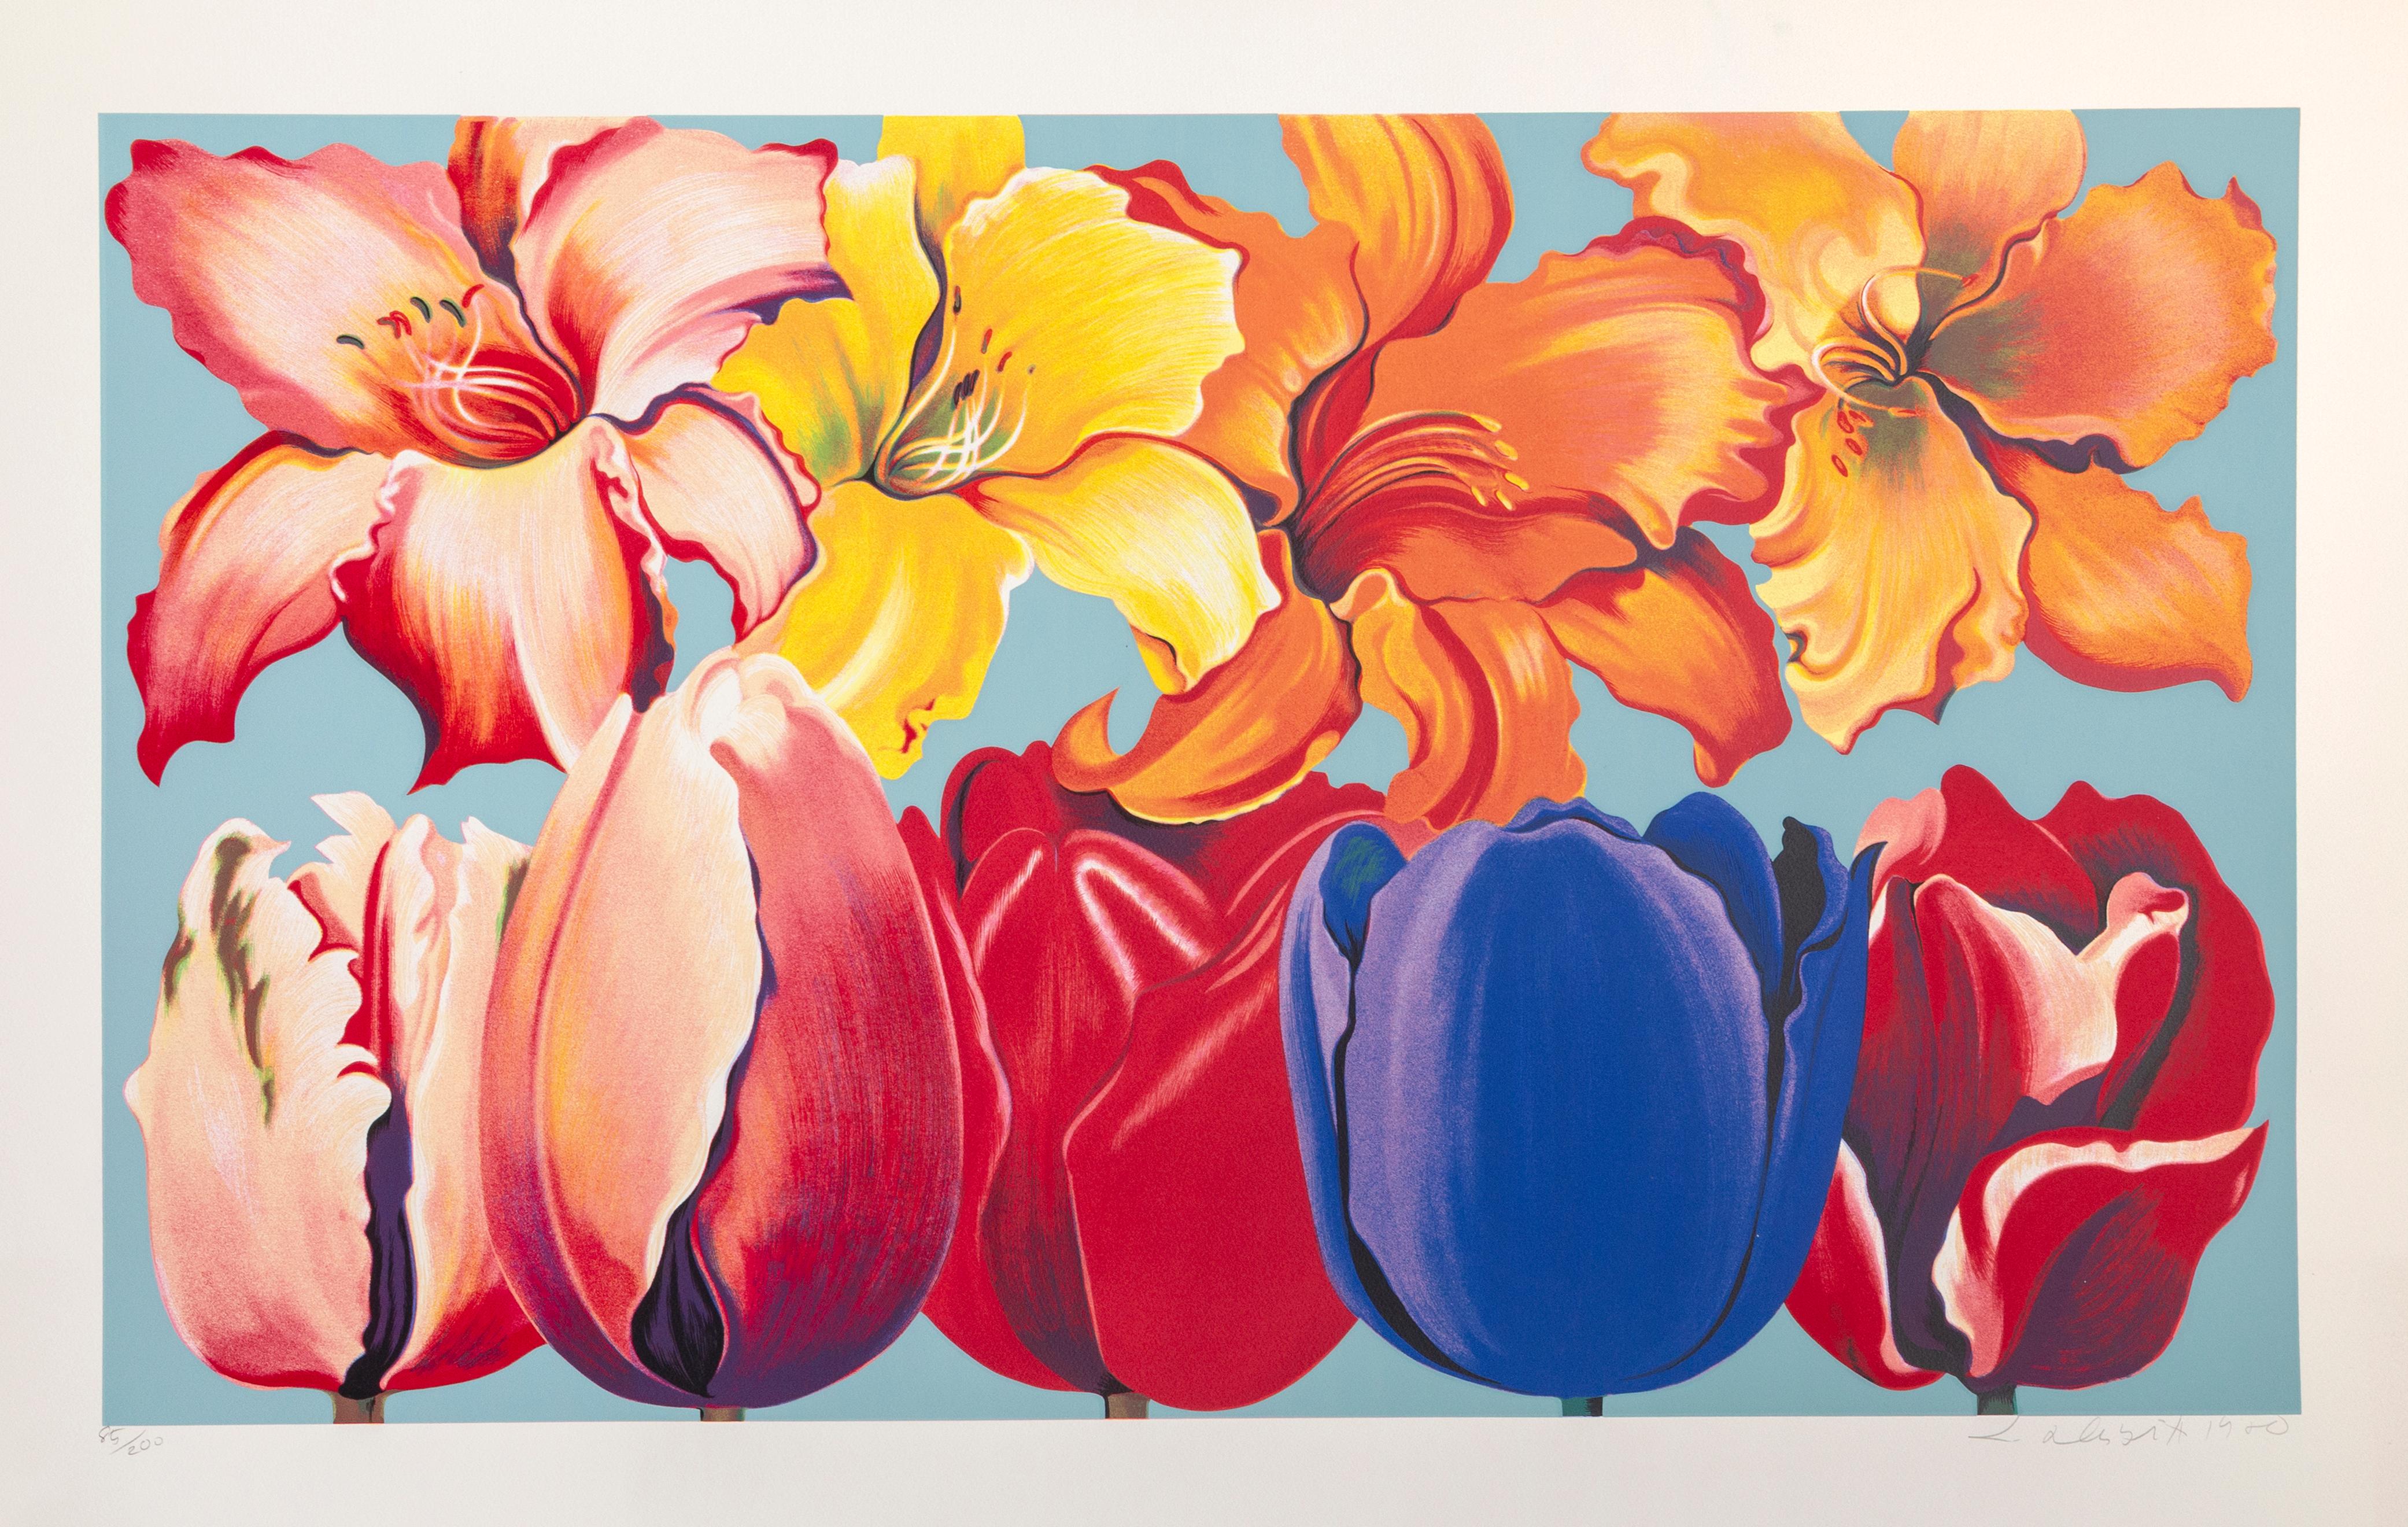 Künstler: Lowell Blair Nesbitt, Amerikaner (1933 - 1993)
Titel: Insel der Blumen
Jahr: 1980
Medium: Siebdruck, signiert und nummeriert mit Bleistift
Auflage: 85/200
Bildgröße: 24 x 40  Zoll
Größe: 34 x 48 Zoll (86,36 x 121,92 cm)